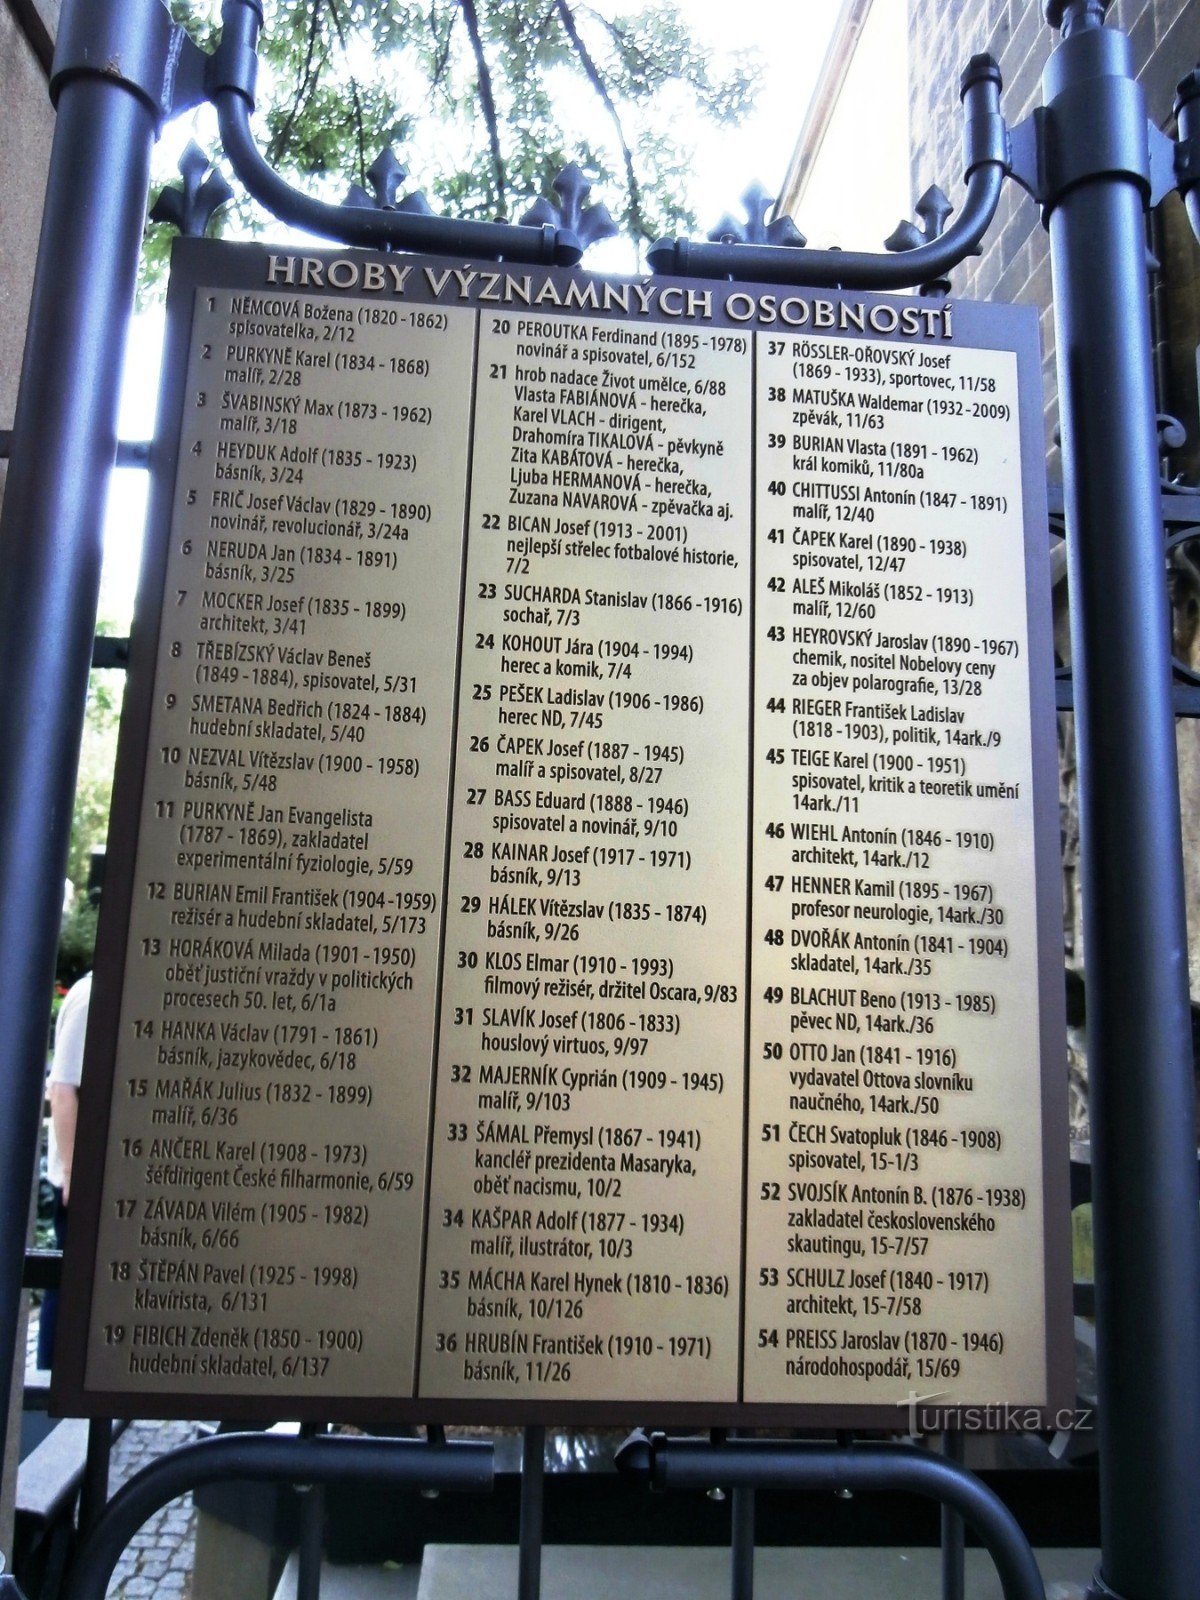 Список могил видатних діячів